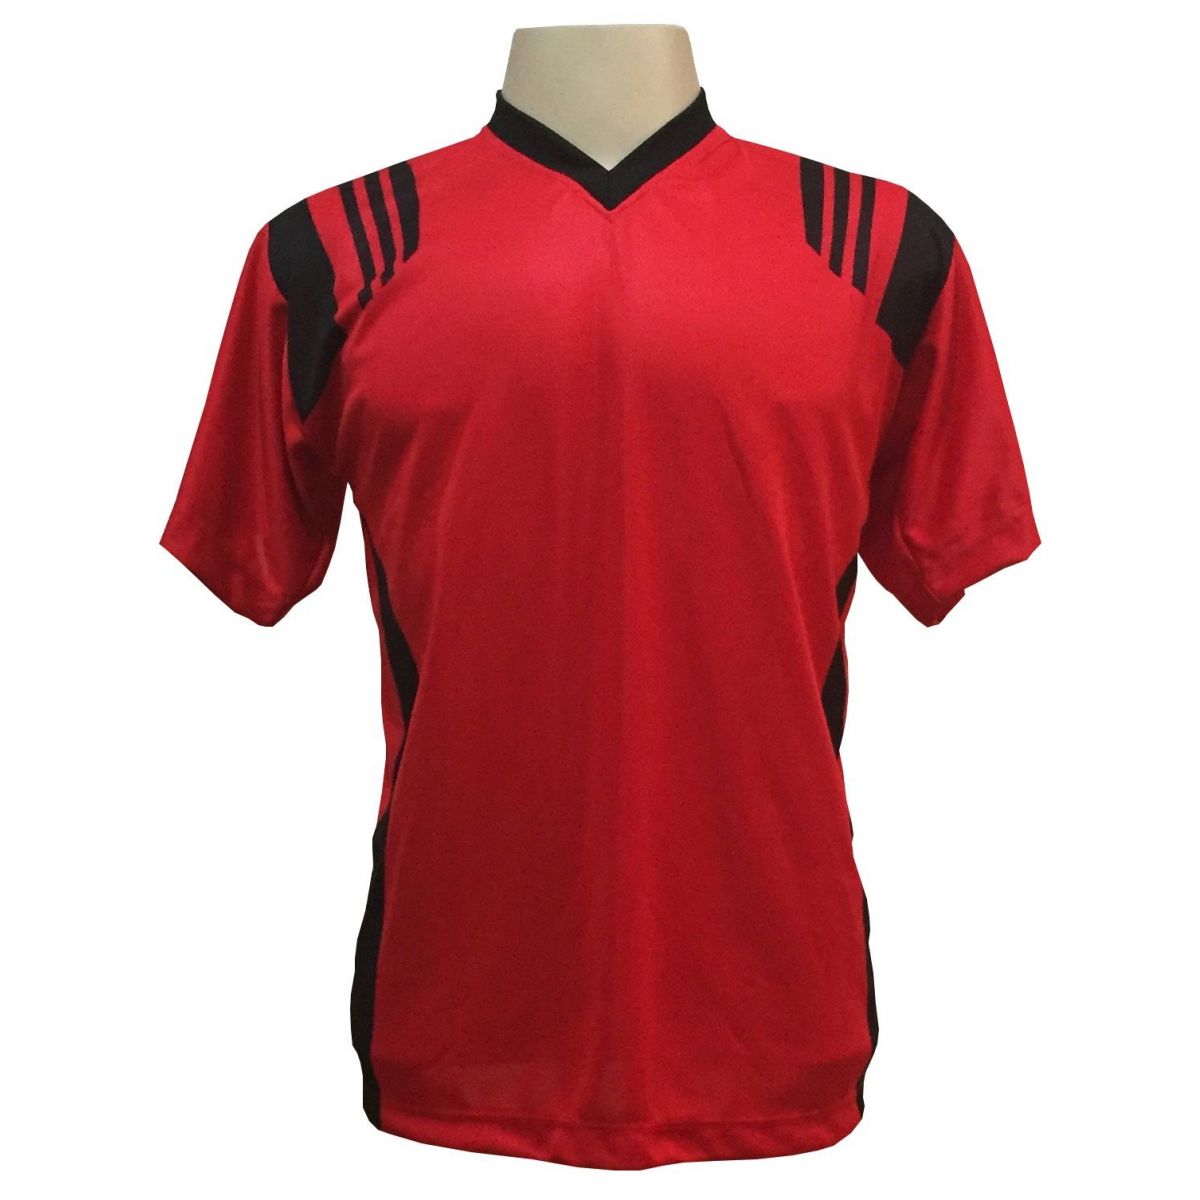 Uniforme Esportivo com 18 camisas modelo Roma Vermelho/Preto + 18 calções modelo Madrid Preto + Brindes